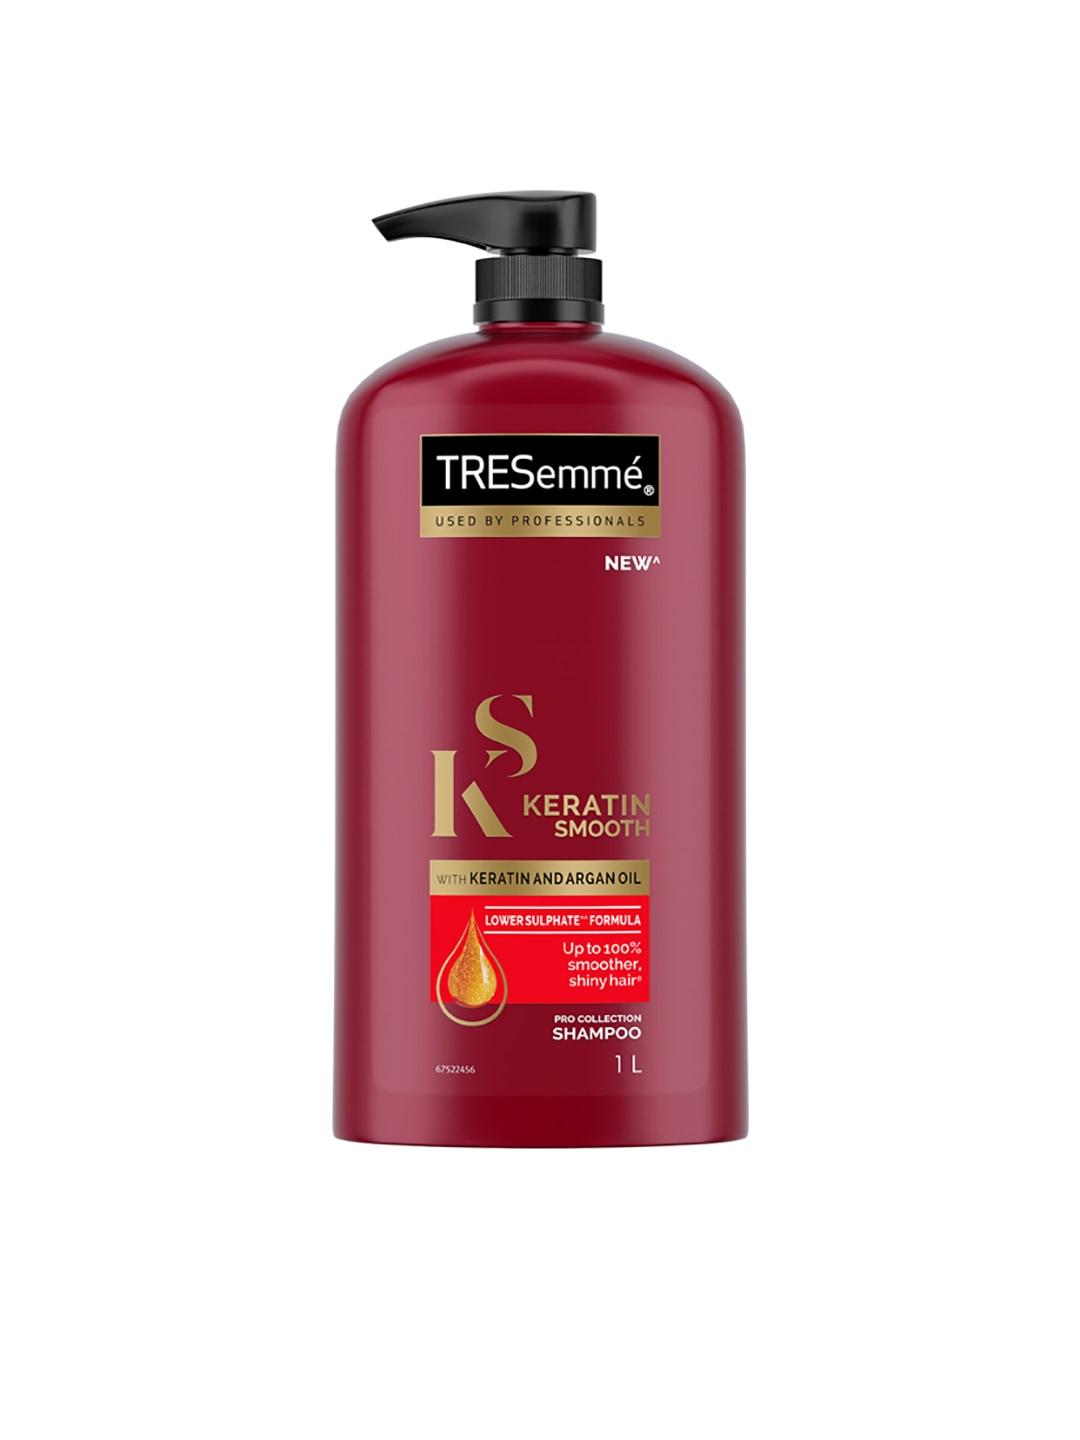 TRESemme Keratin Smooth Shampoo with Keratin & Argan Oil for Straight, Shiny Hair- 1L